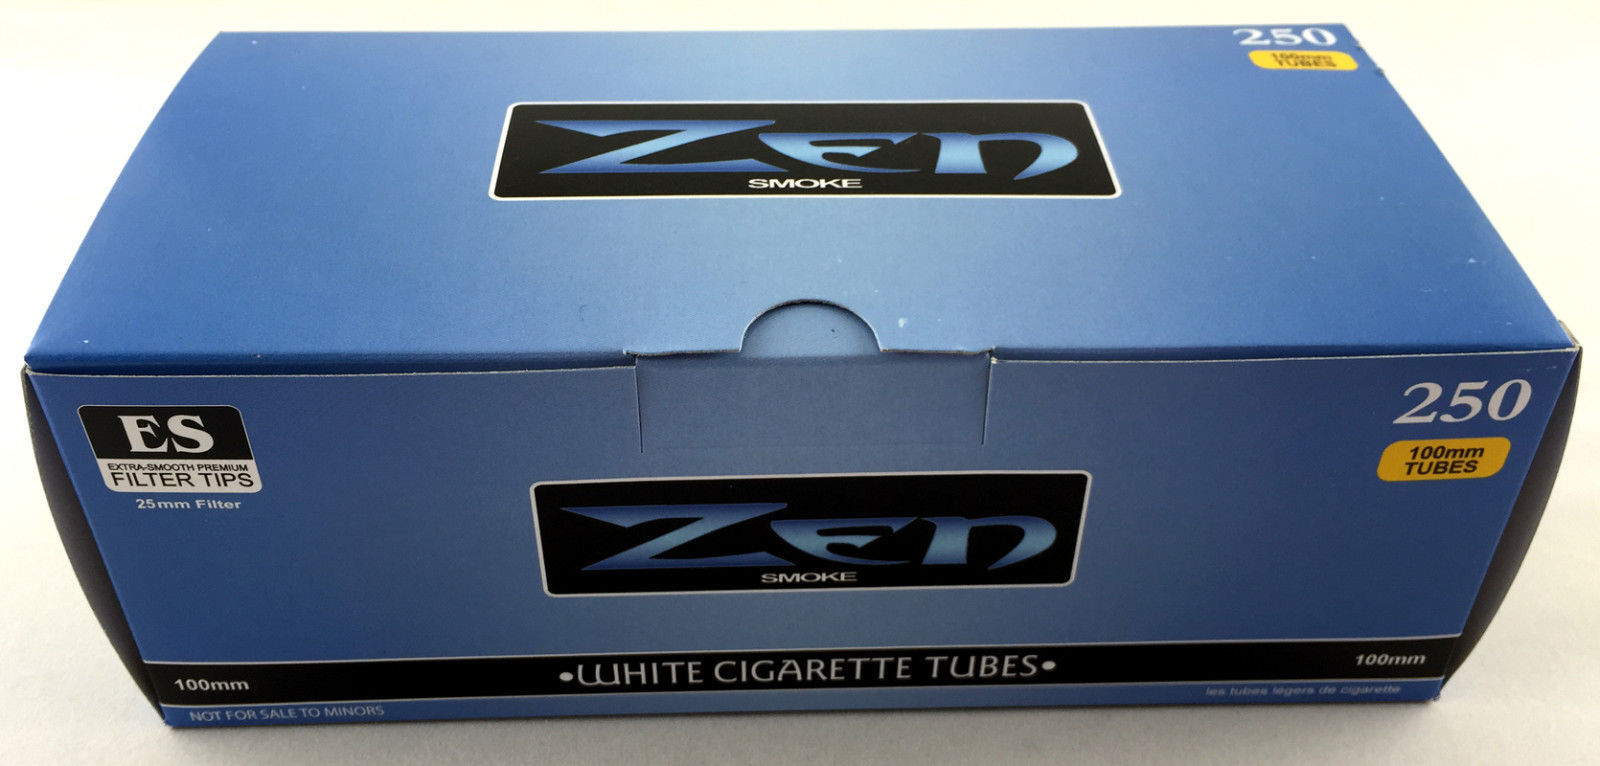 1 Box Zen Smoke White Light 100 mm 100's Cigarette Filter 250 Tubes - 3131-1